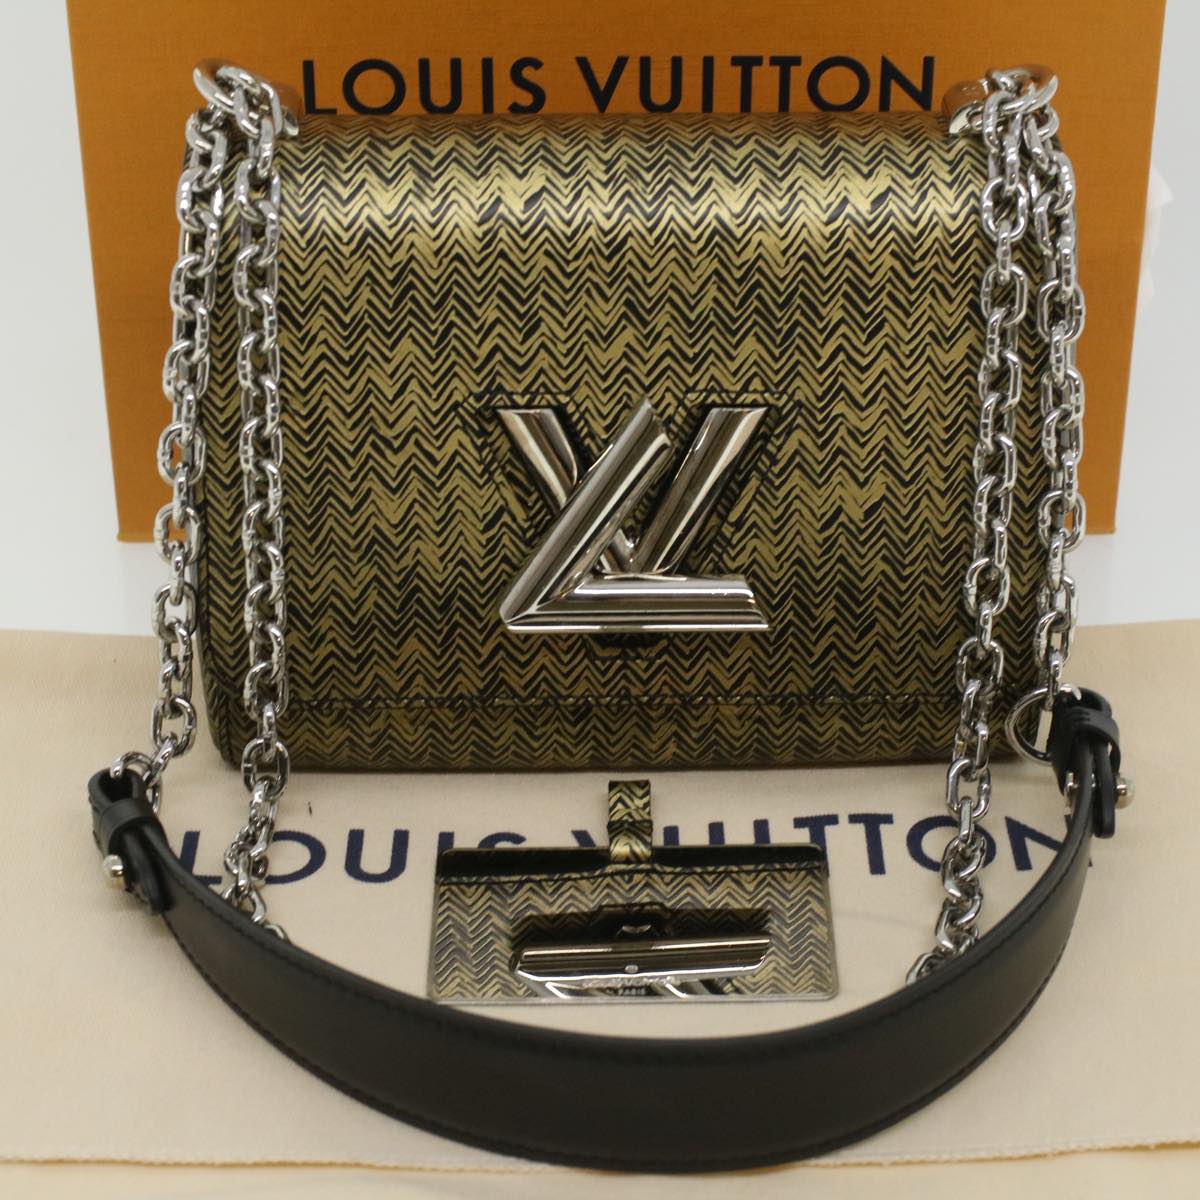 LOUIS VUITTON Epi Twist PM Shoulder Bag Gold LV Auth bs3149A